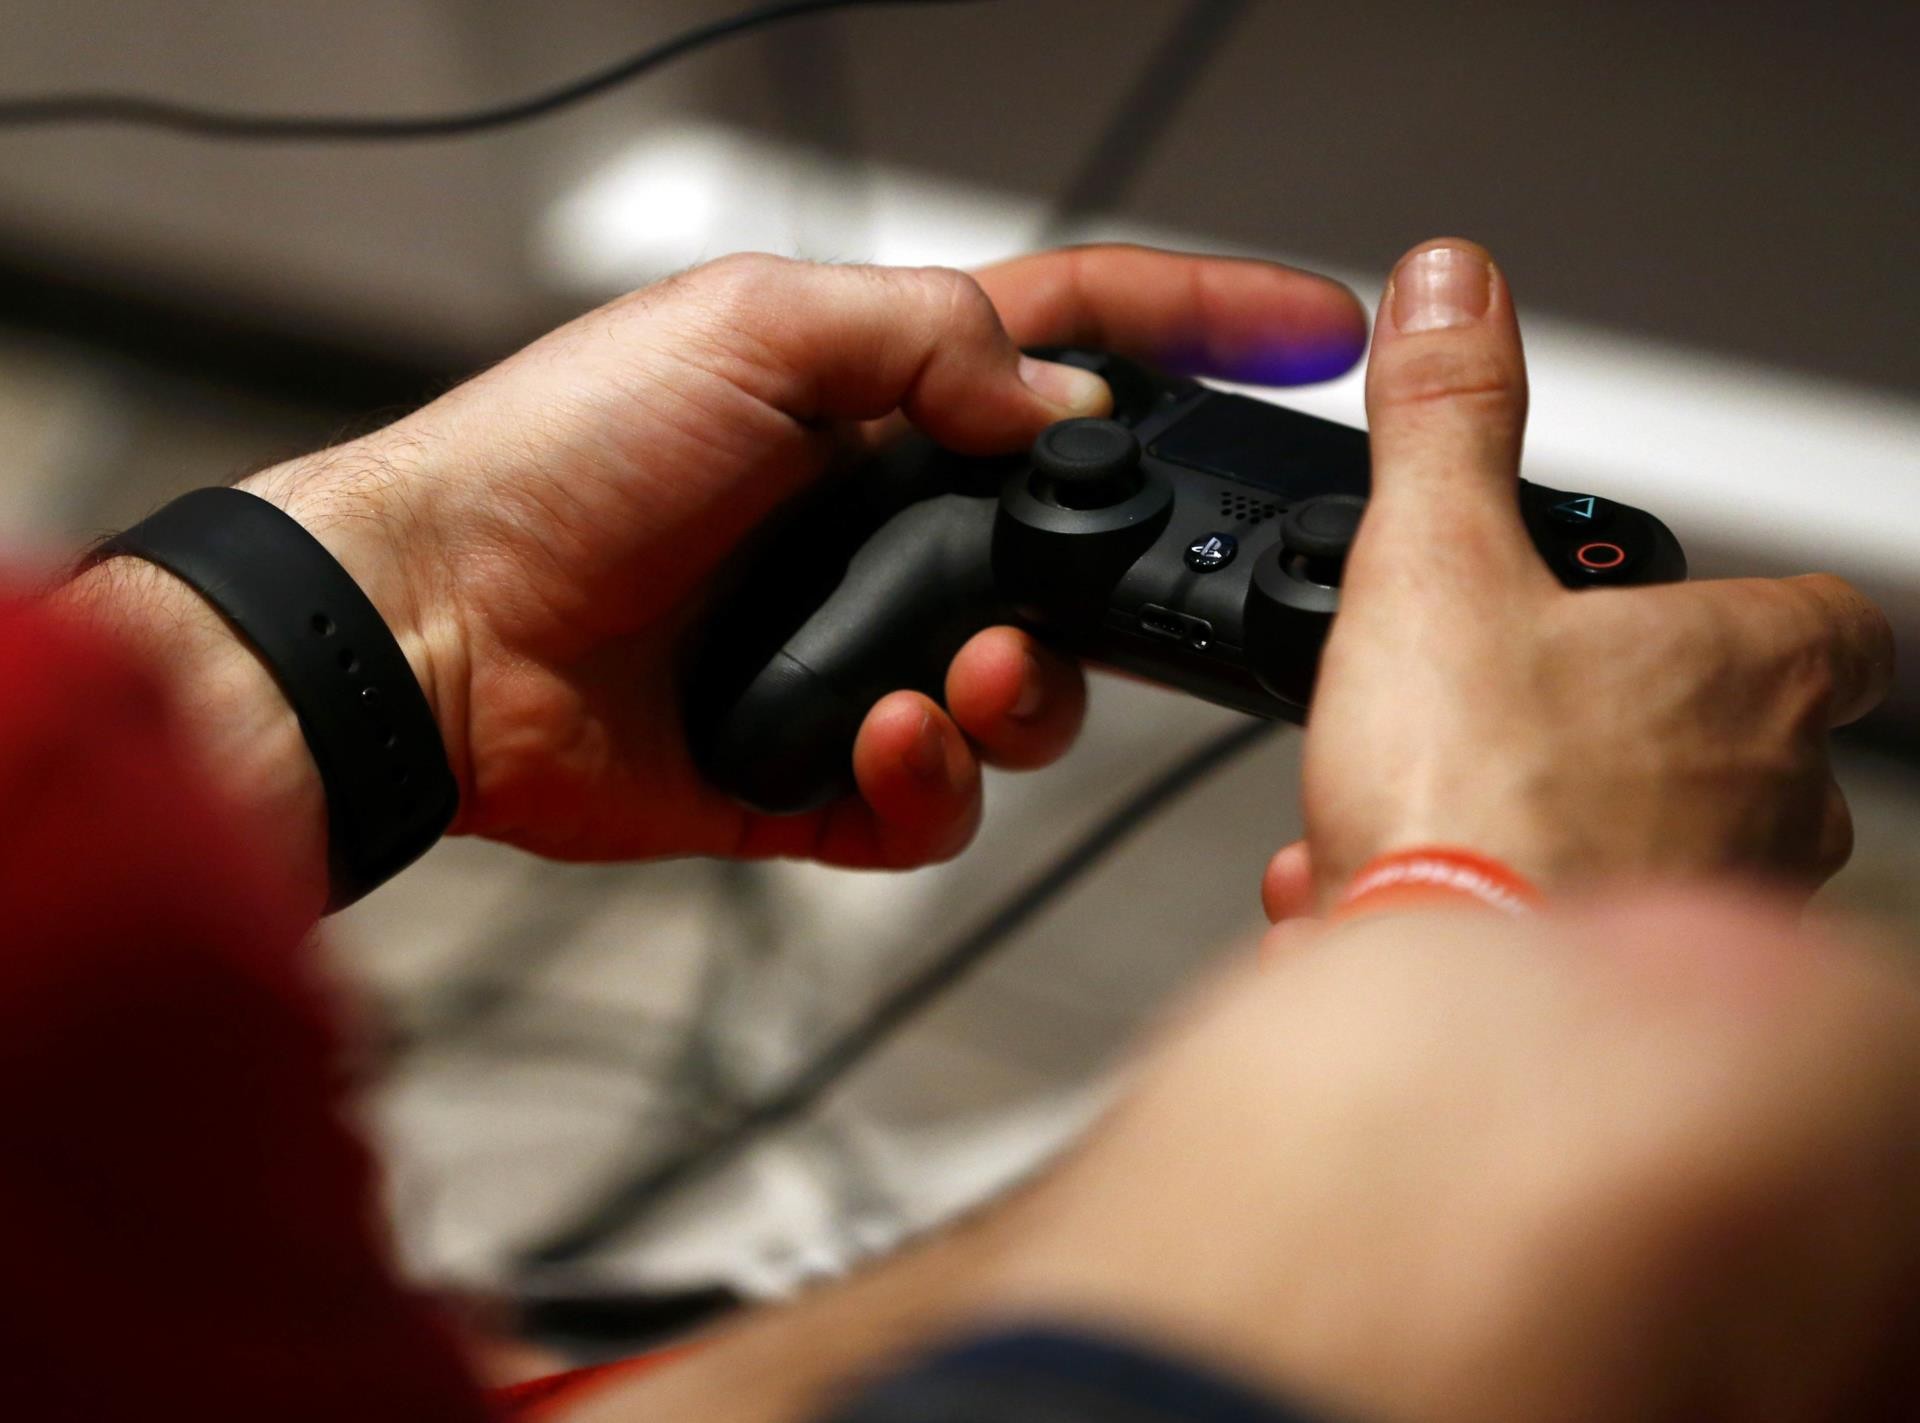 PS5 vai ter preço 6% mais baixo após redução de imposto sobre games, Games